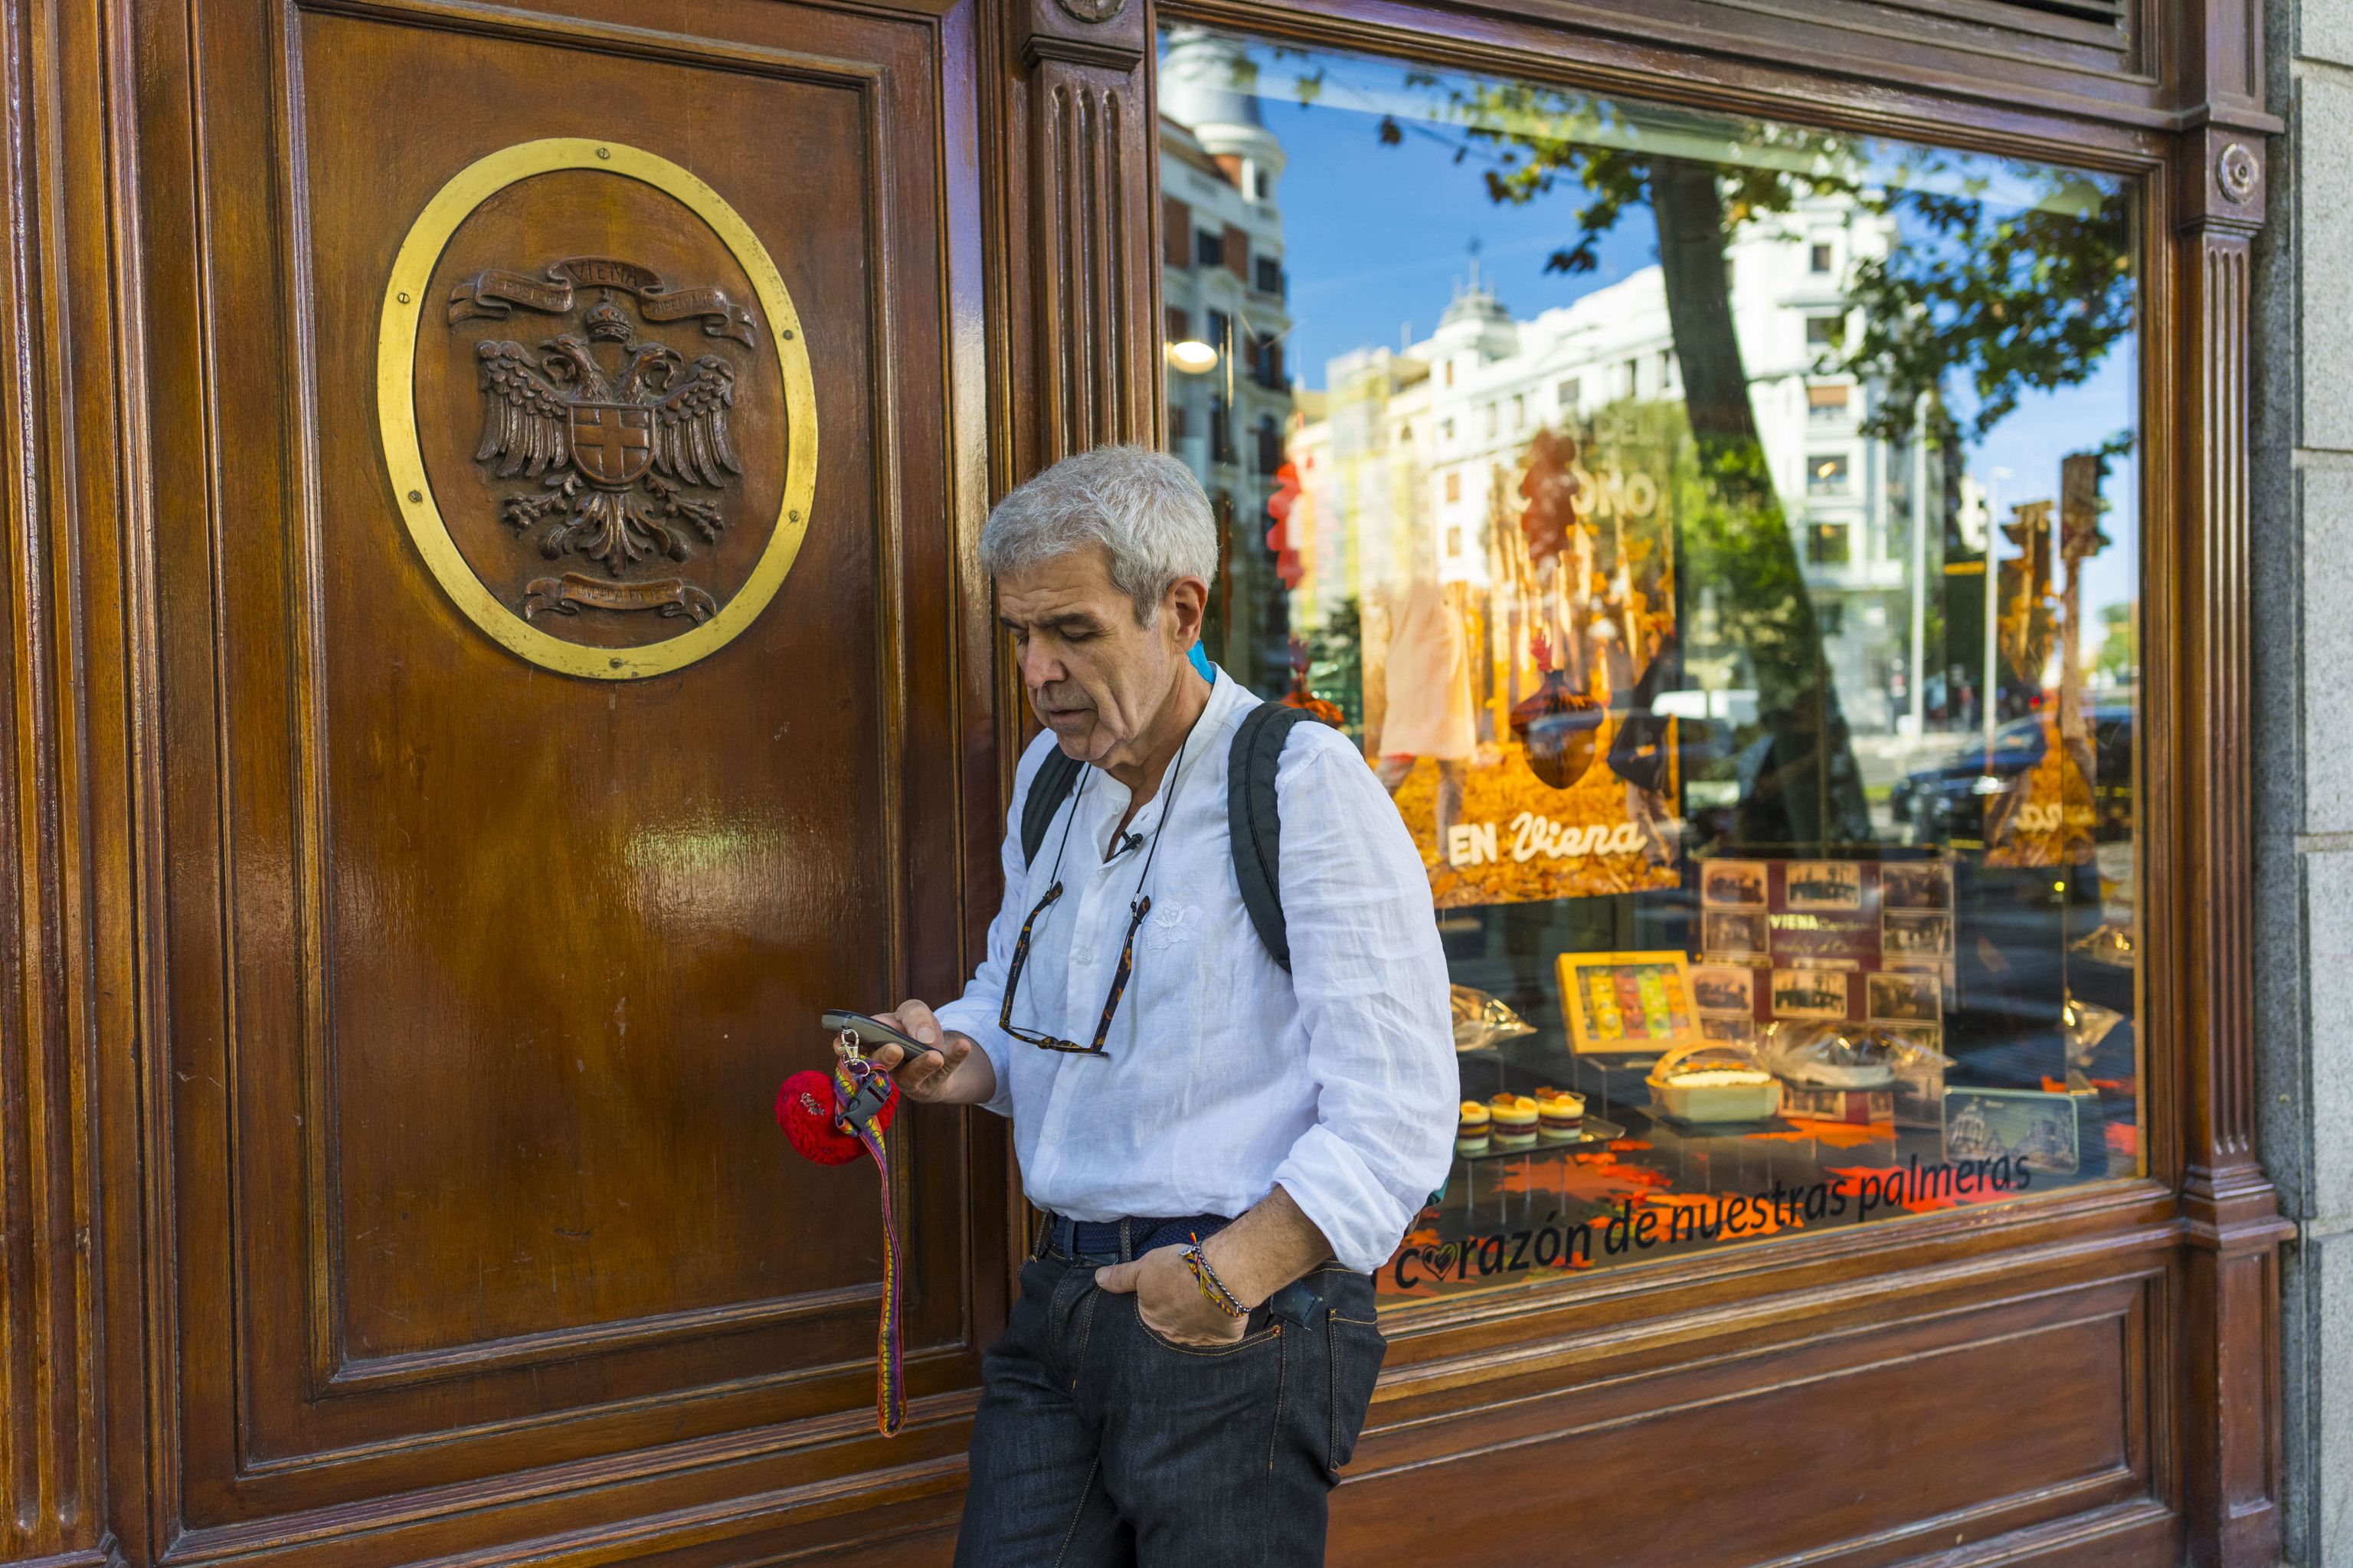 El modista, frente al Viena Capellanes de la calle Génova. Reflejado en el escaparate, uno de los dos hoteles donde ha vivido.